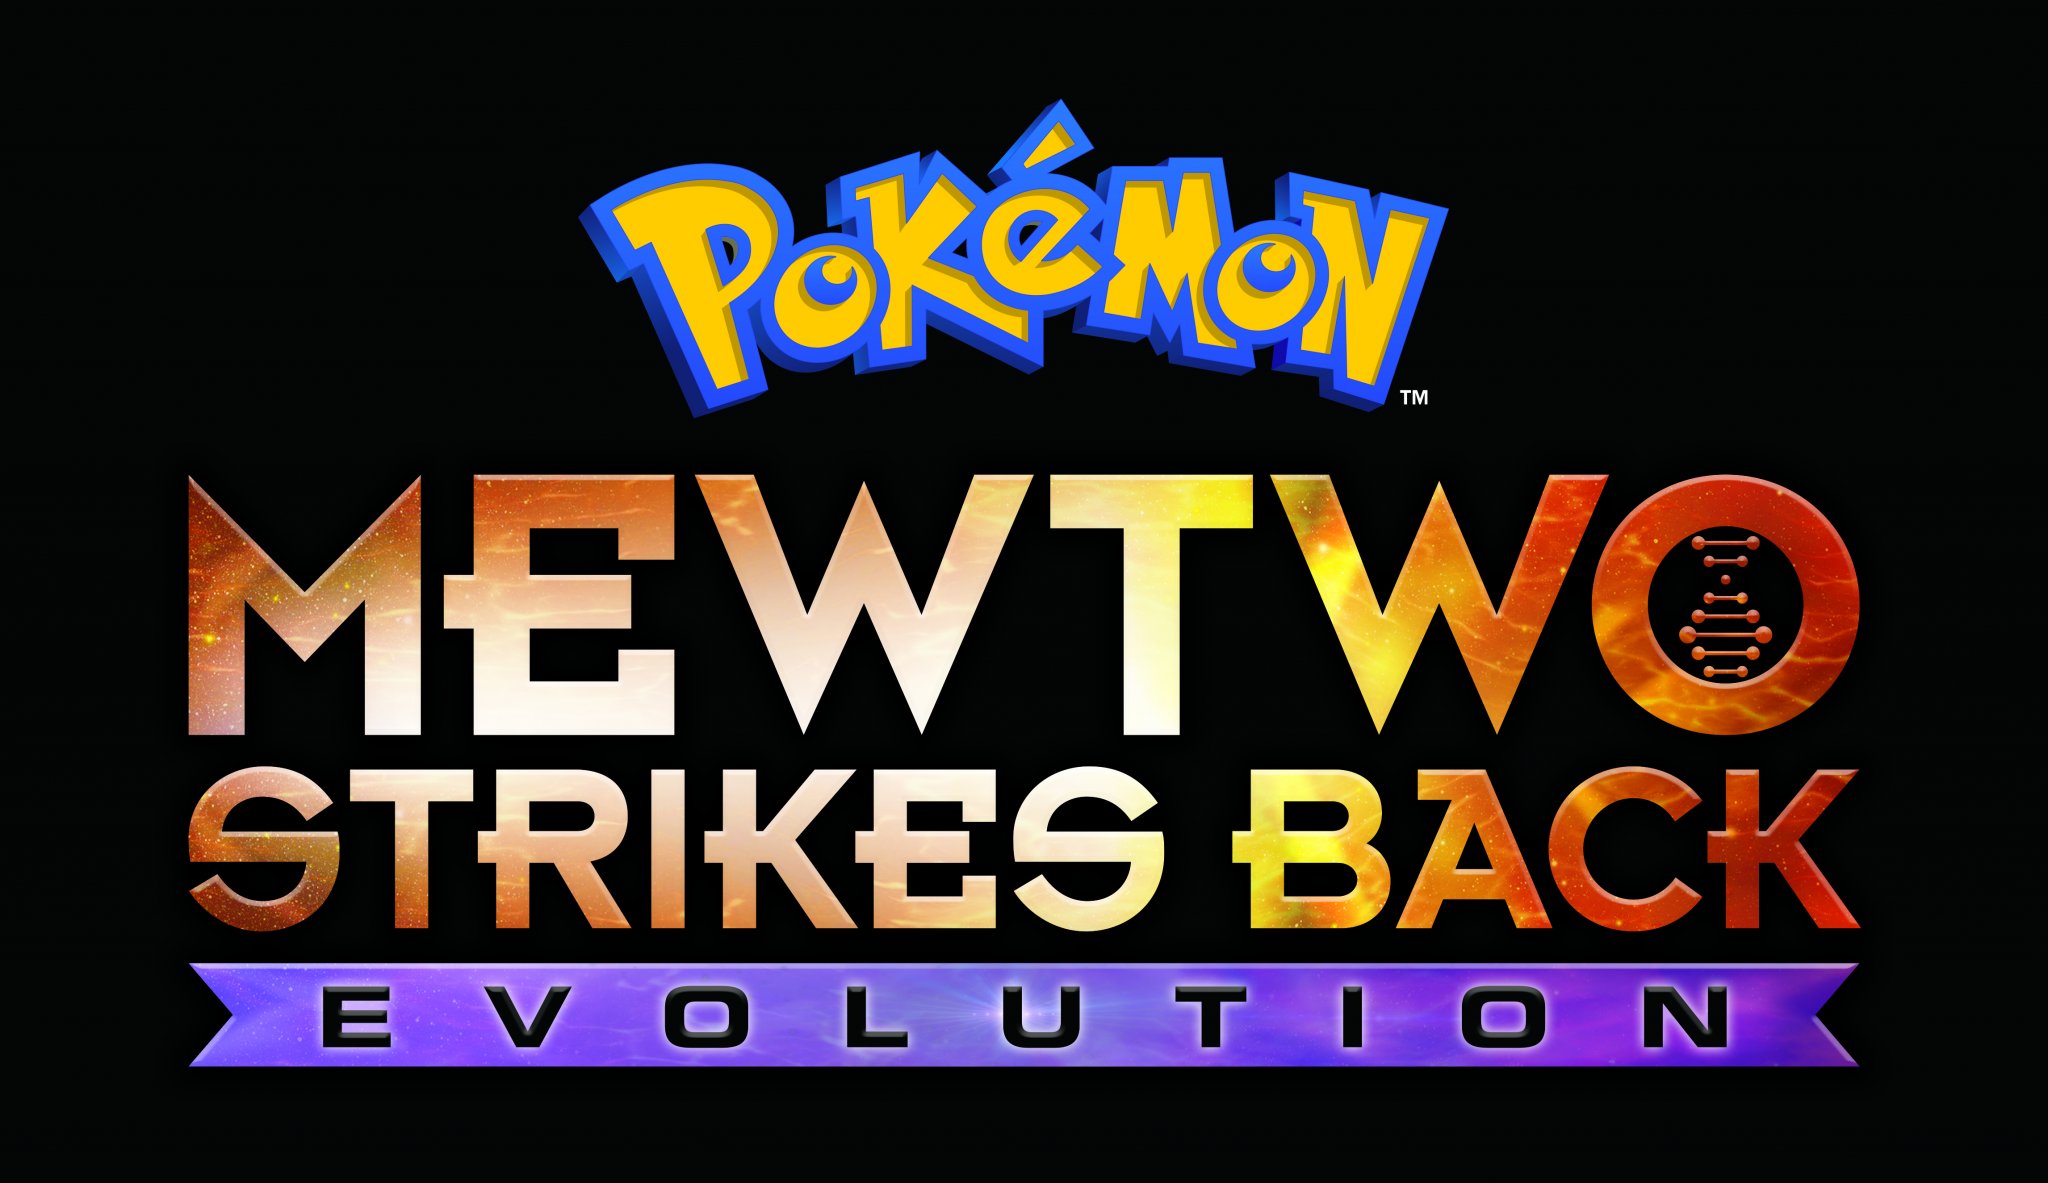 Pokémon: Mewtwo Strikes Back — Evolution